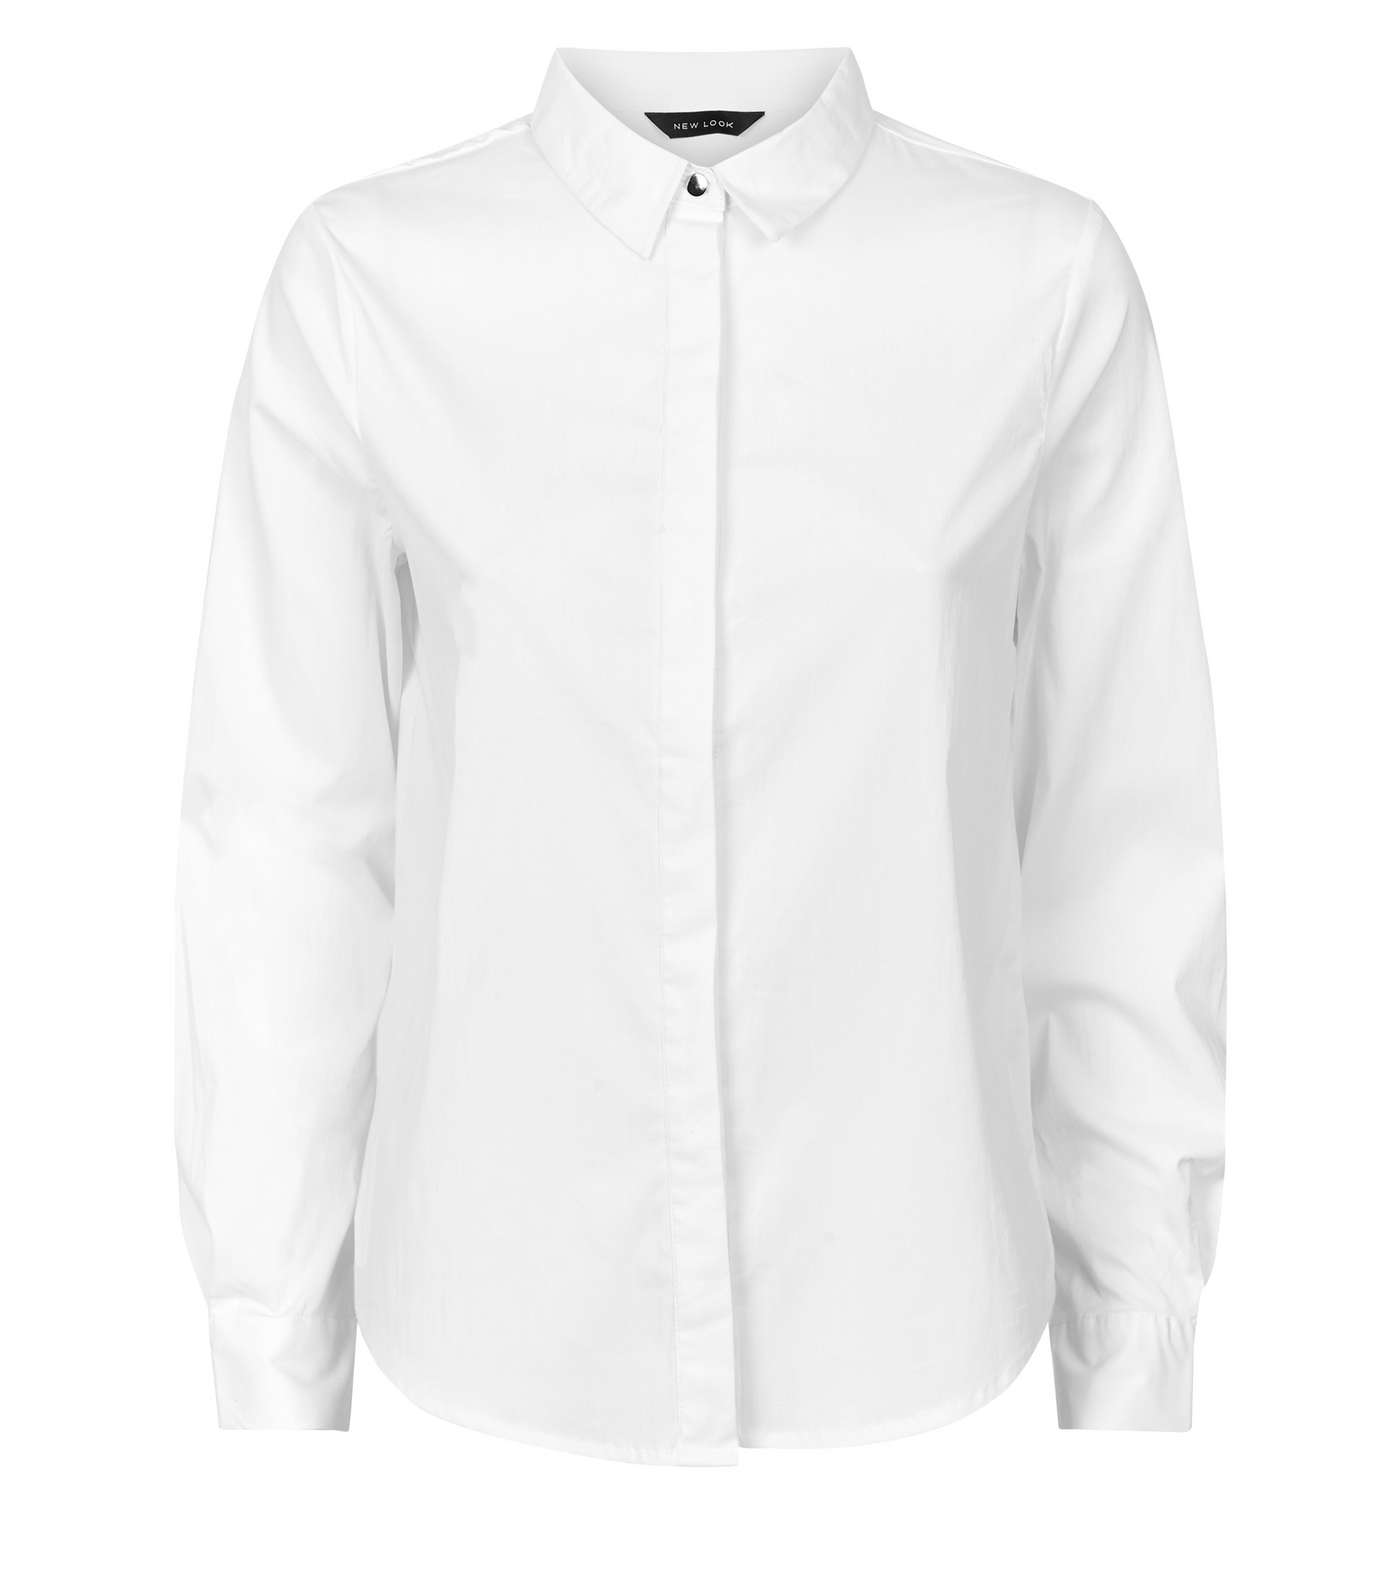 White Long Sleeve Shirt Image 4